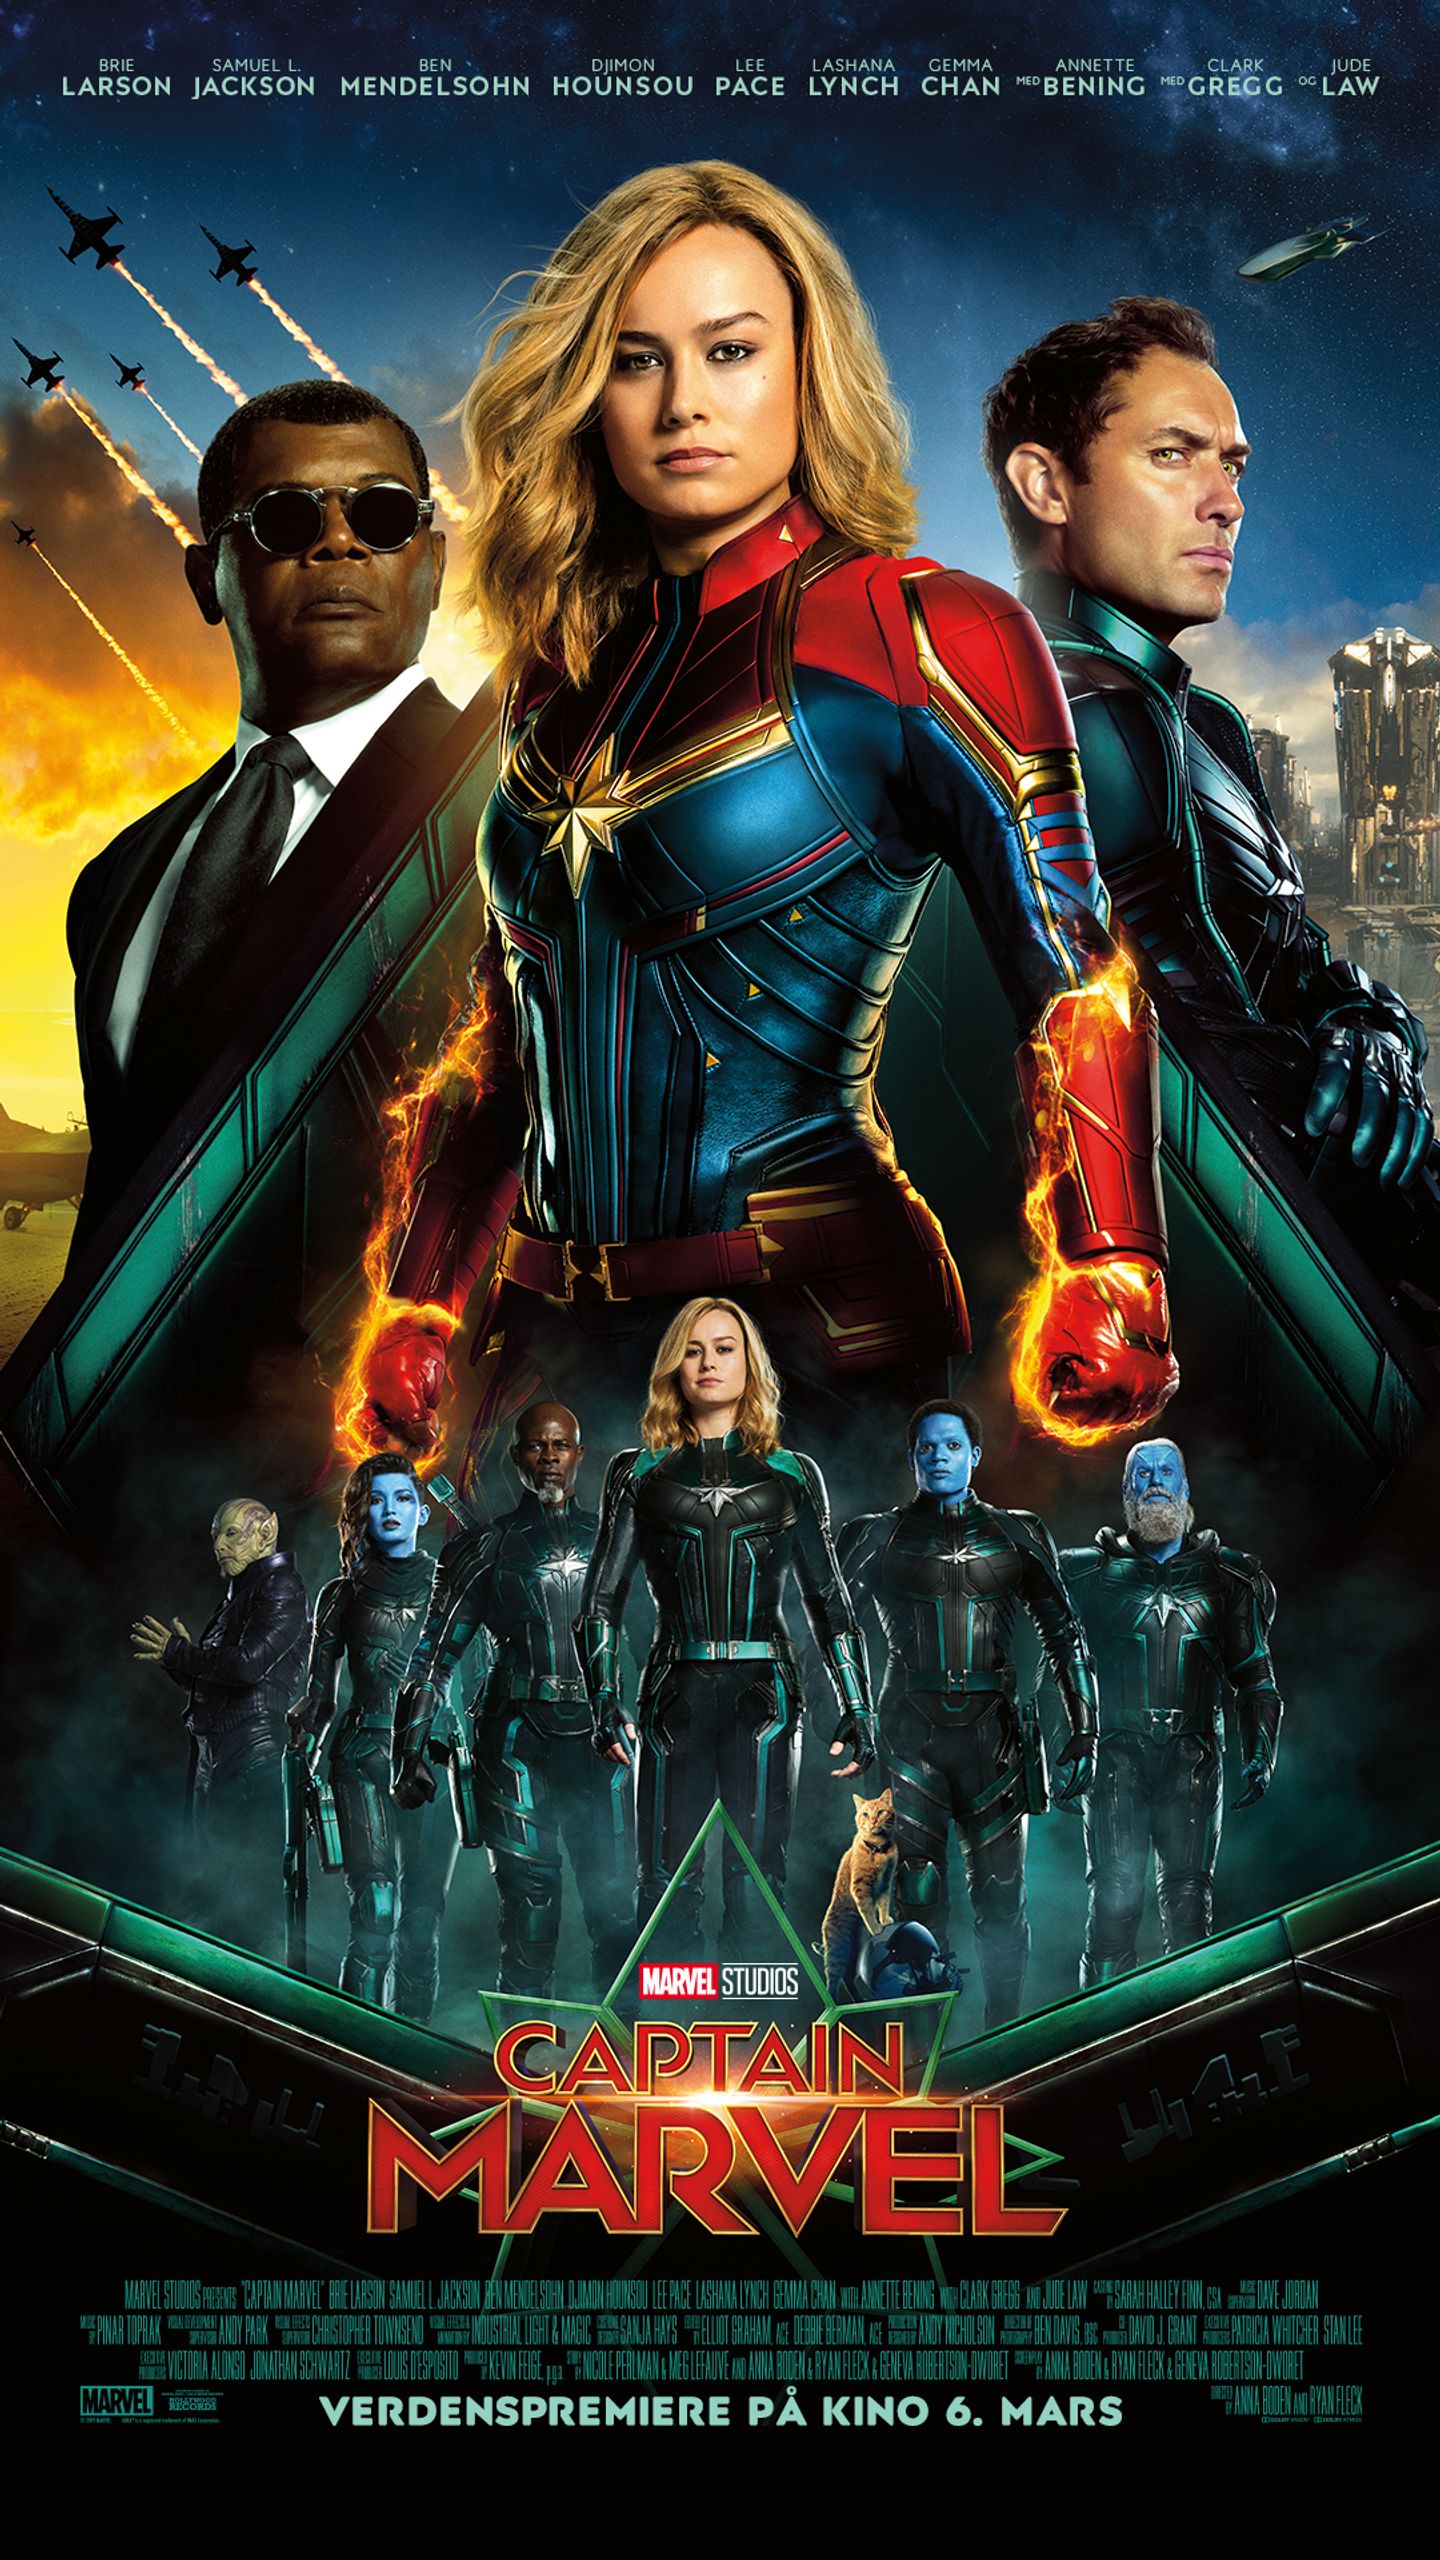 Plakat for 'Captain Marvel'